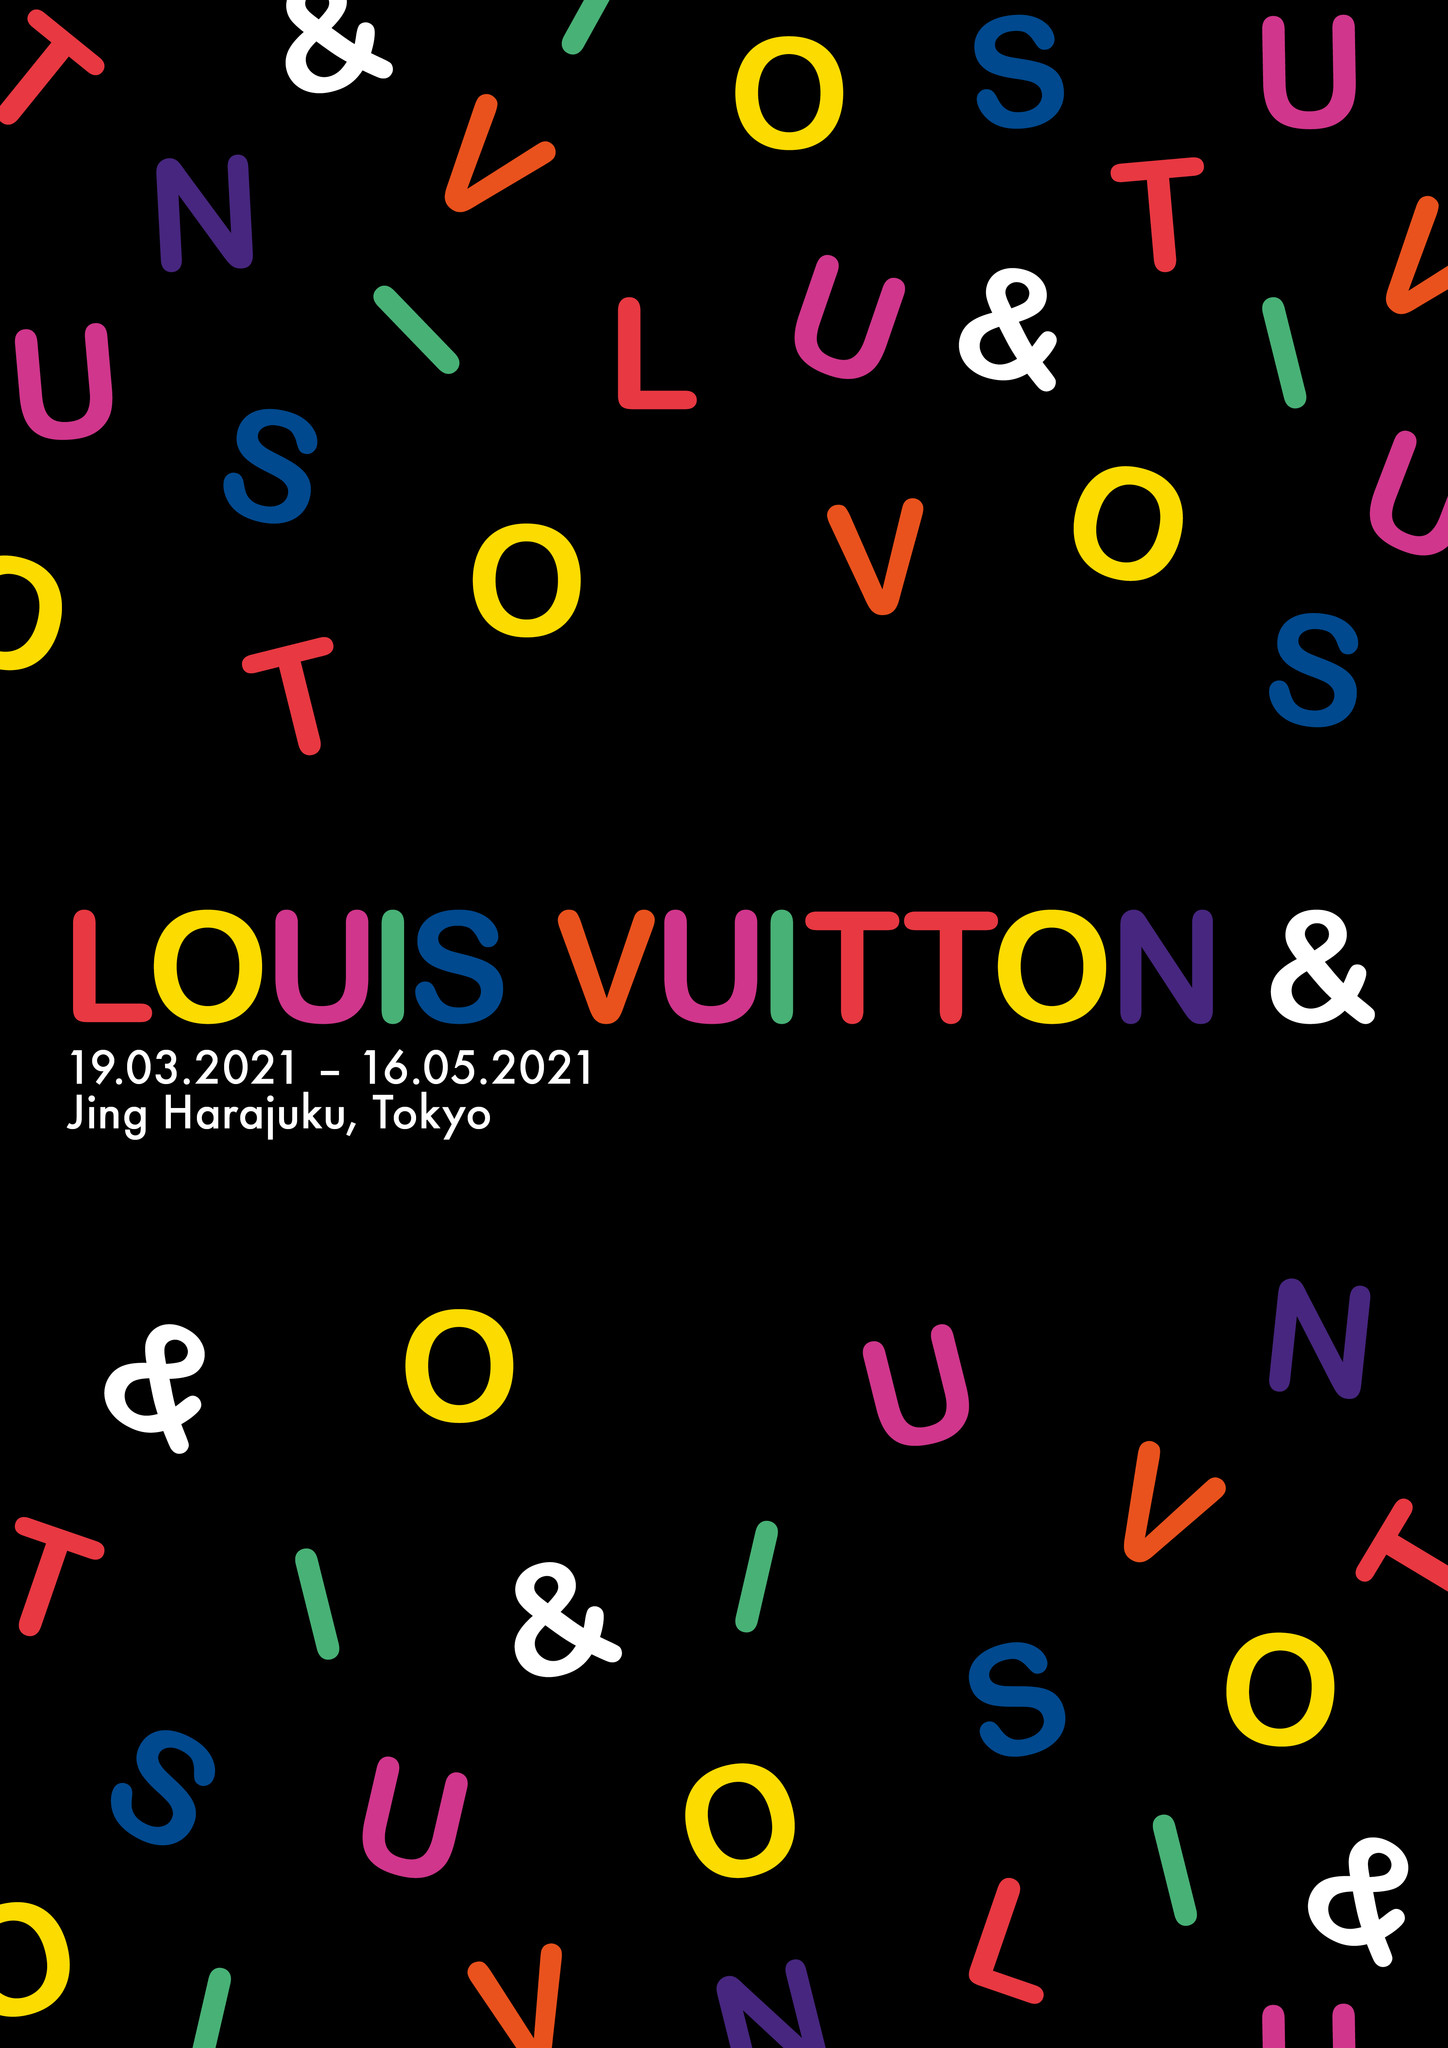 ルイ ヴィトン エキシビション Louis Vuitton を東京 原宿にて3月19日より開催 ルイ ヴィトン ジャパン株式会社のプレスリリース